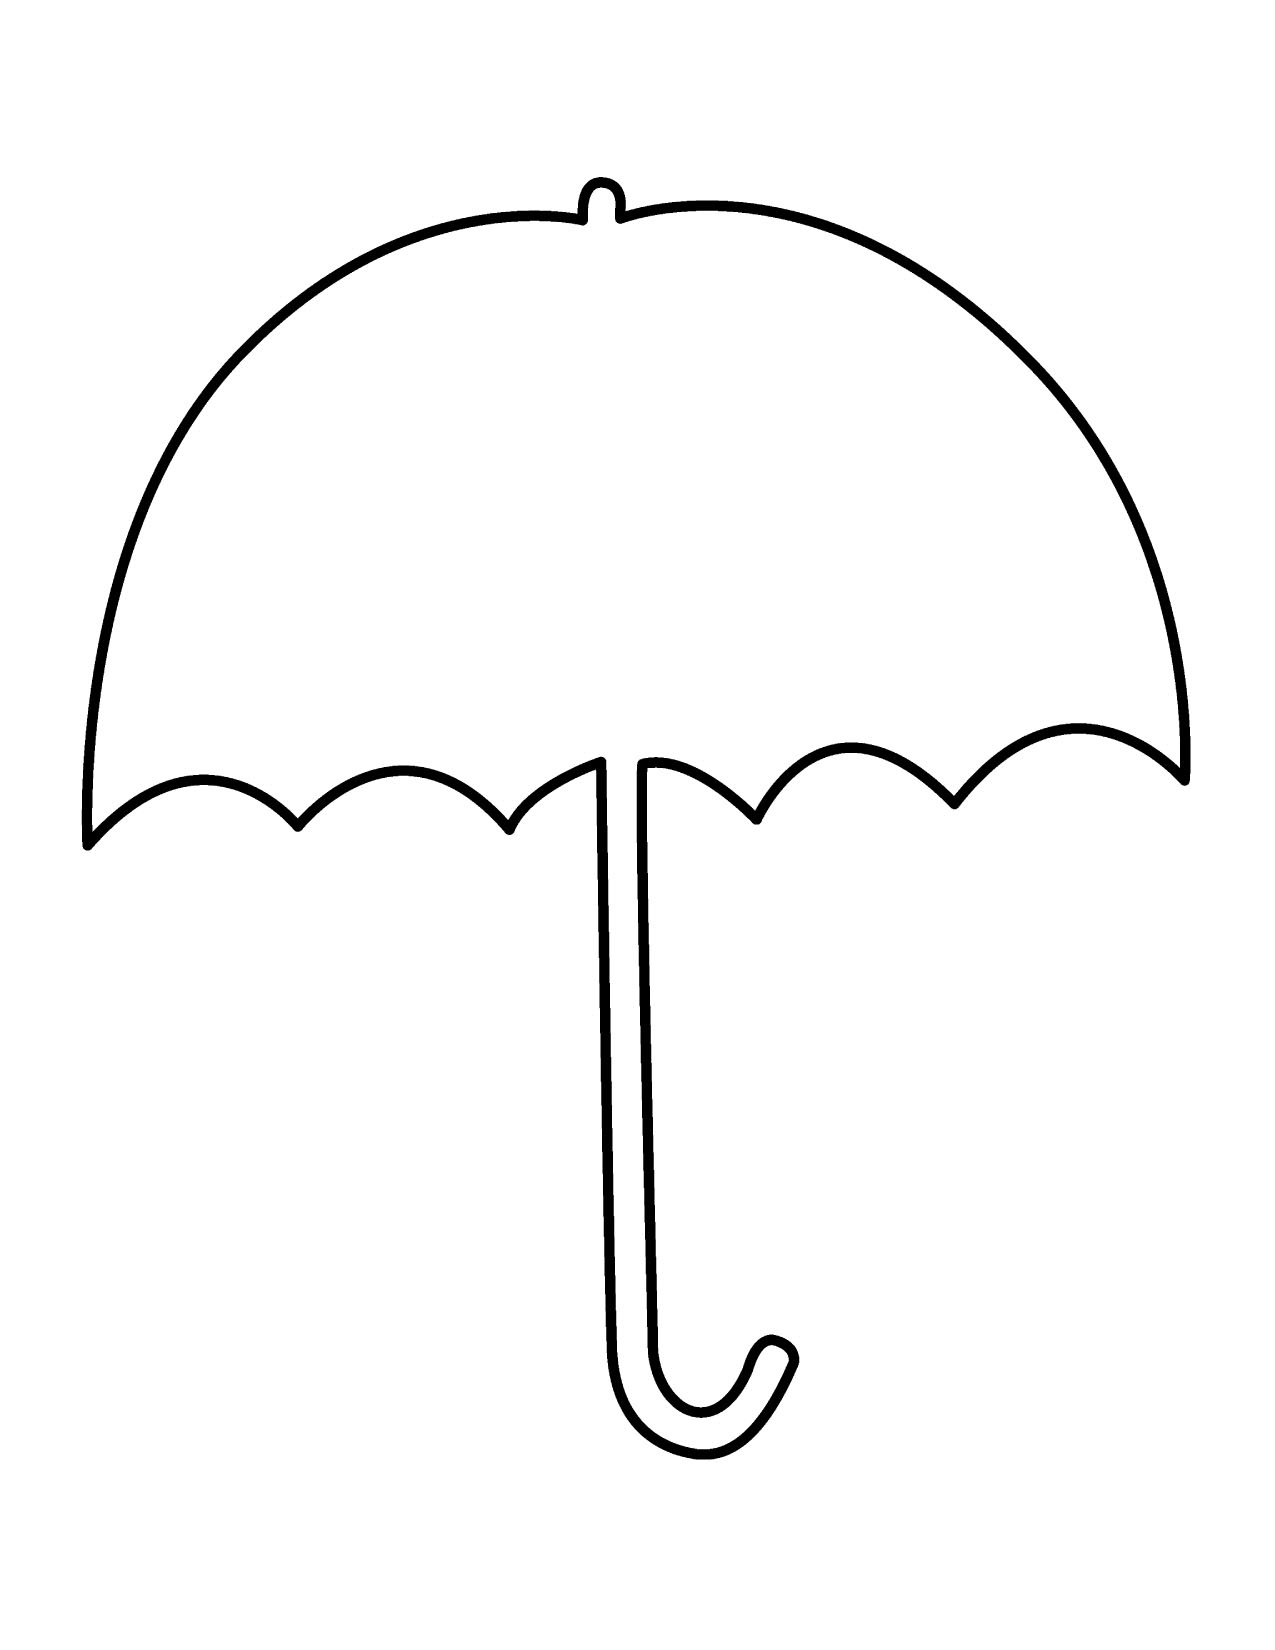 Umbrella  black and white umbrella clipart black and white clipart